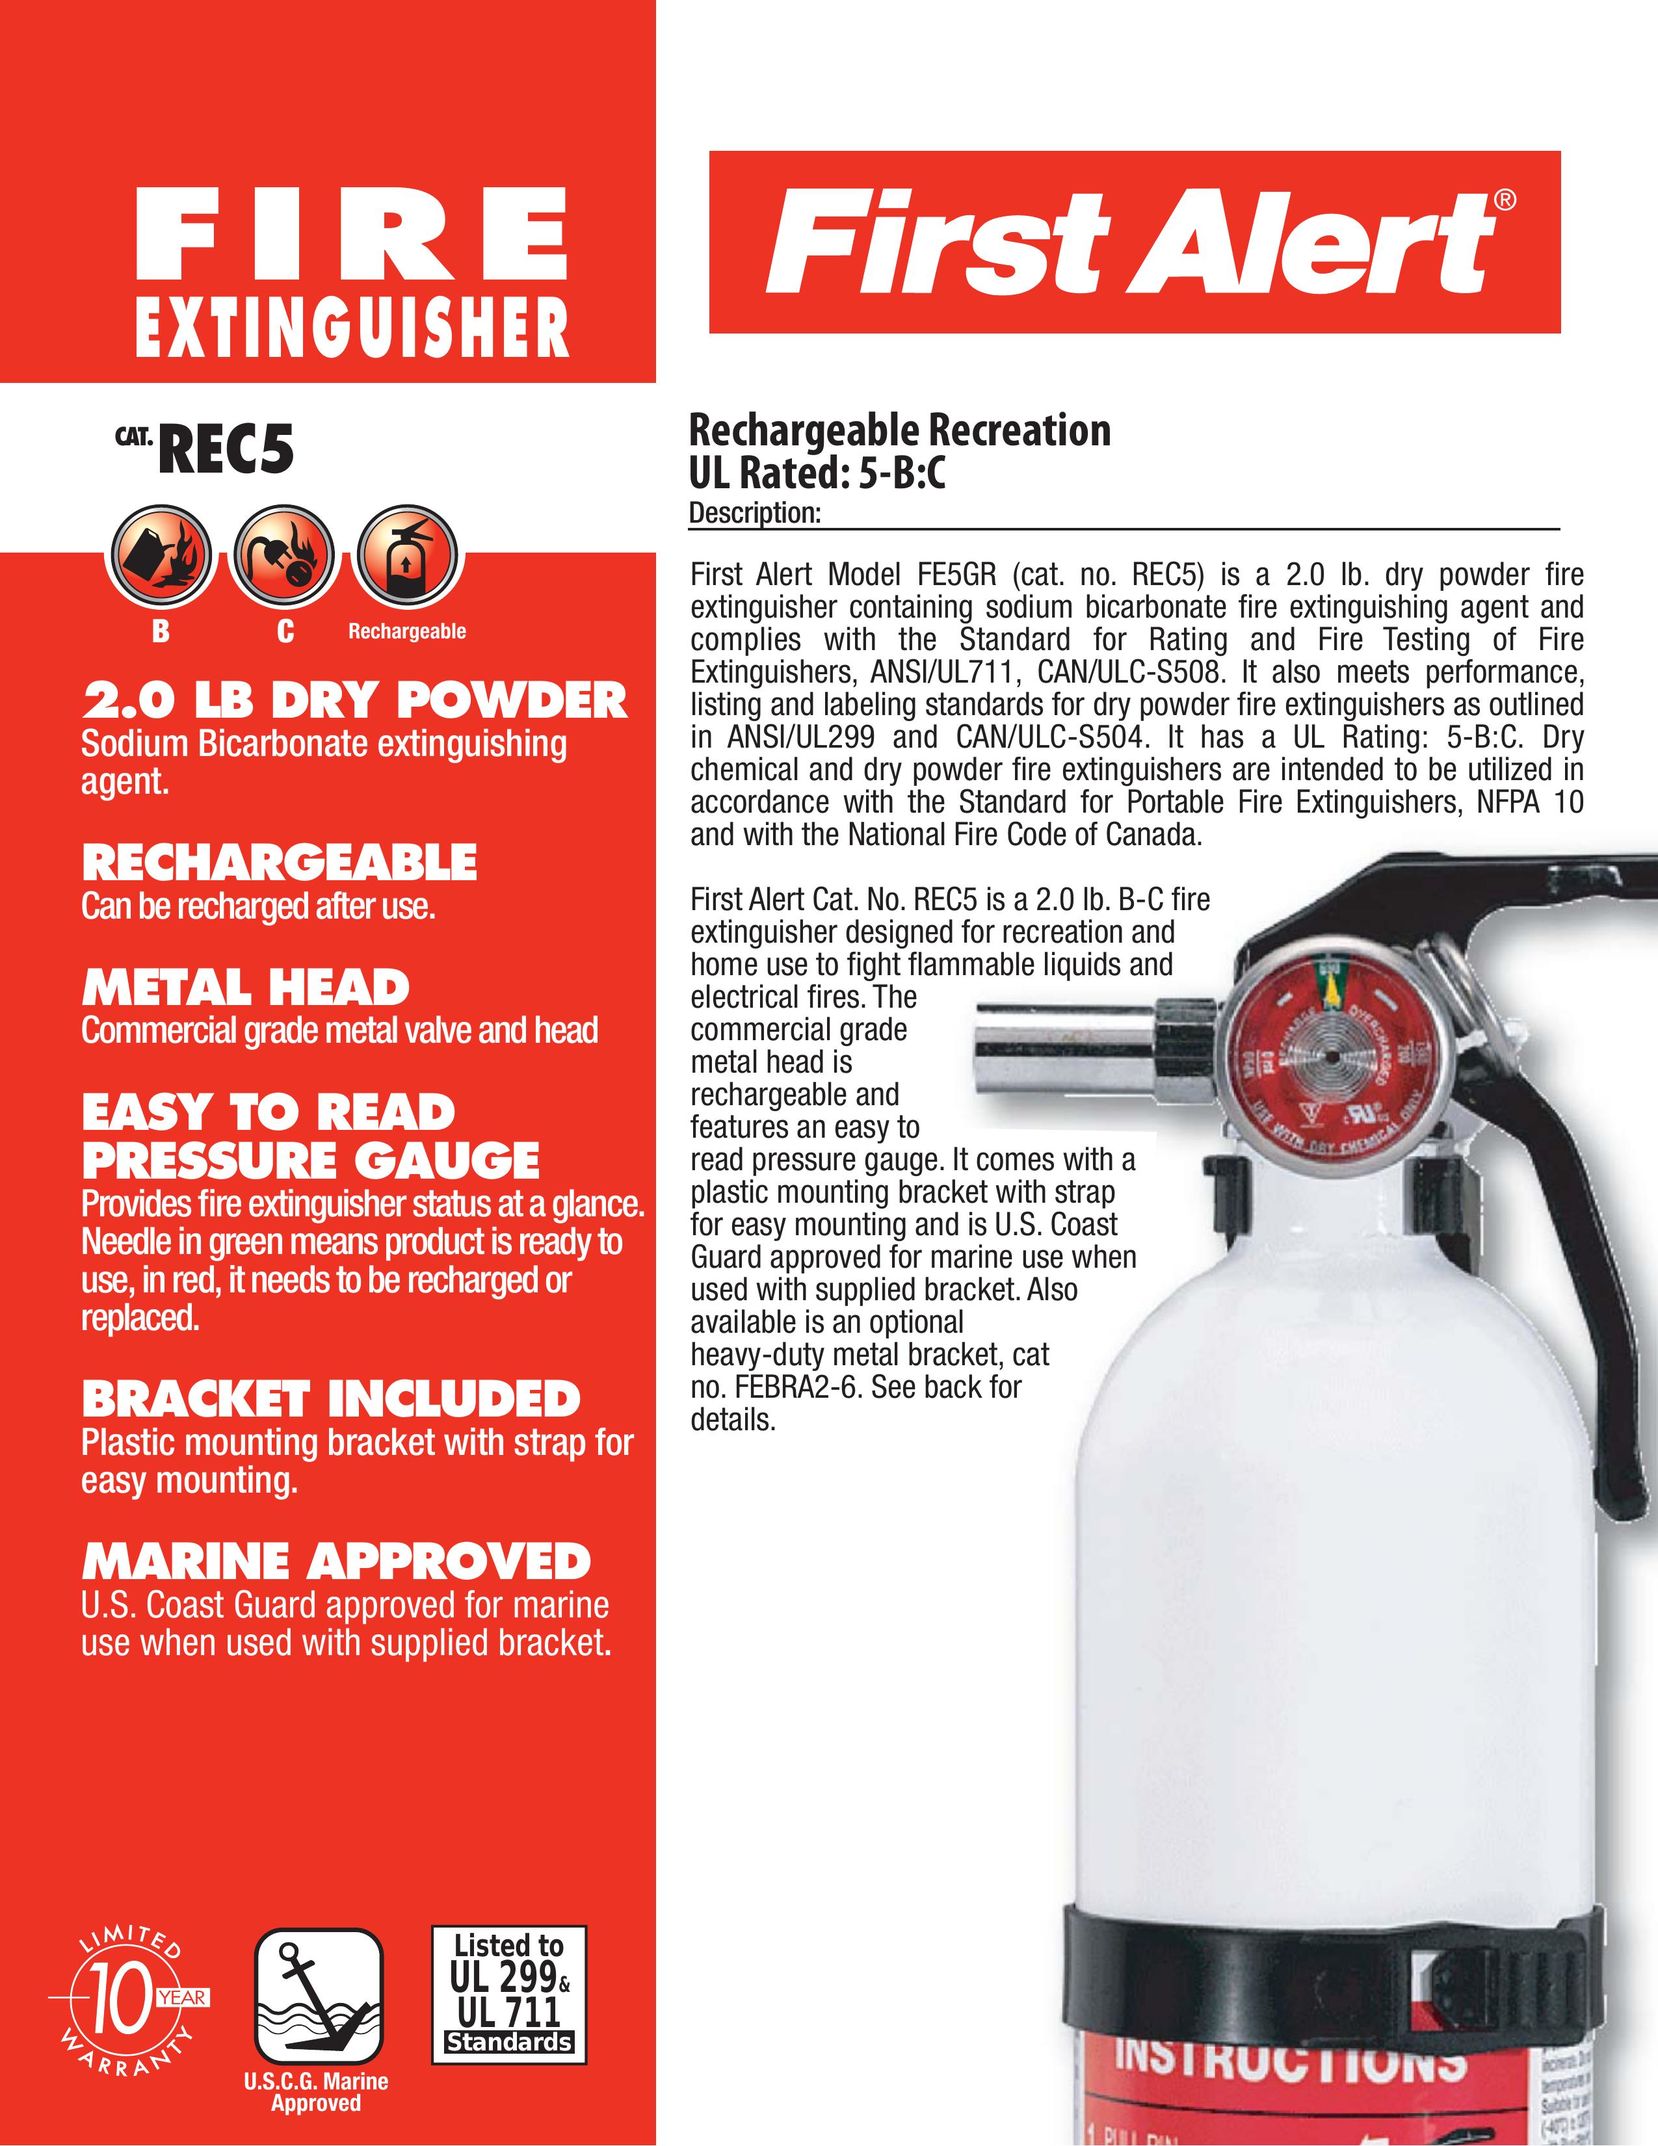 First Alert FE5GR Fire Extinguisher User Manual